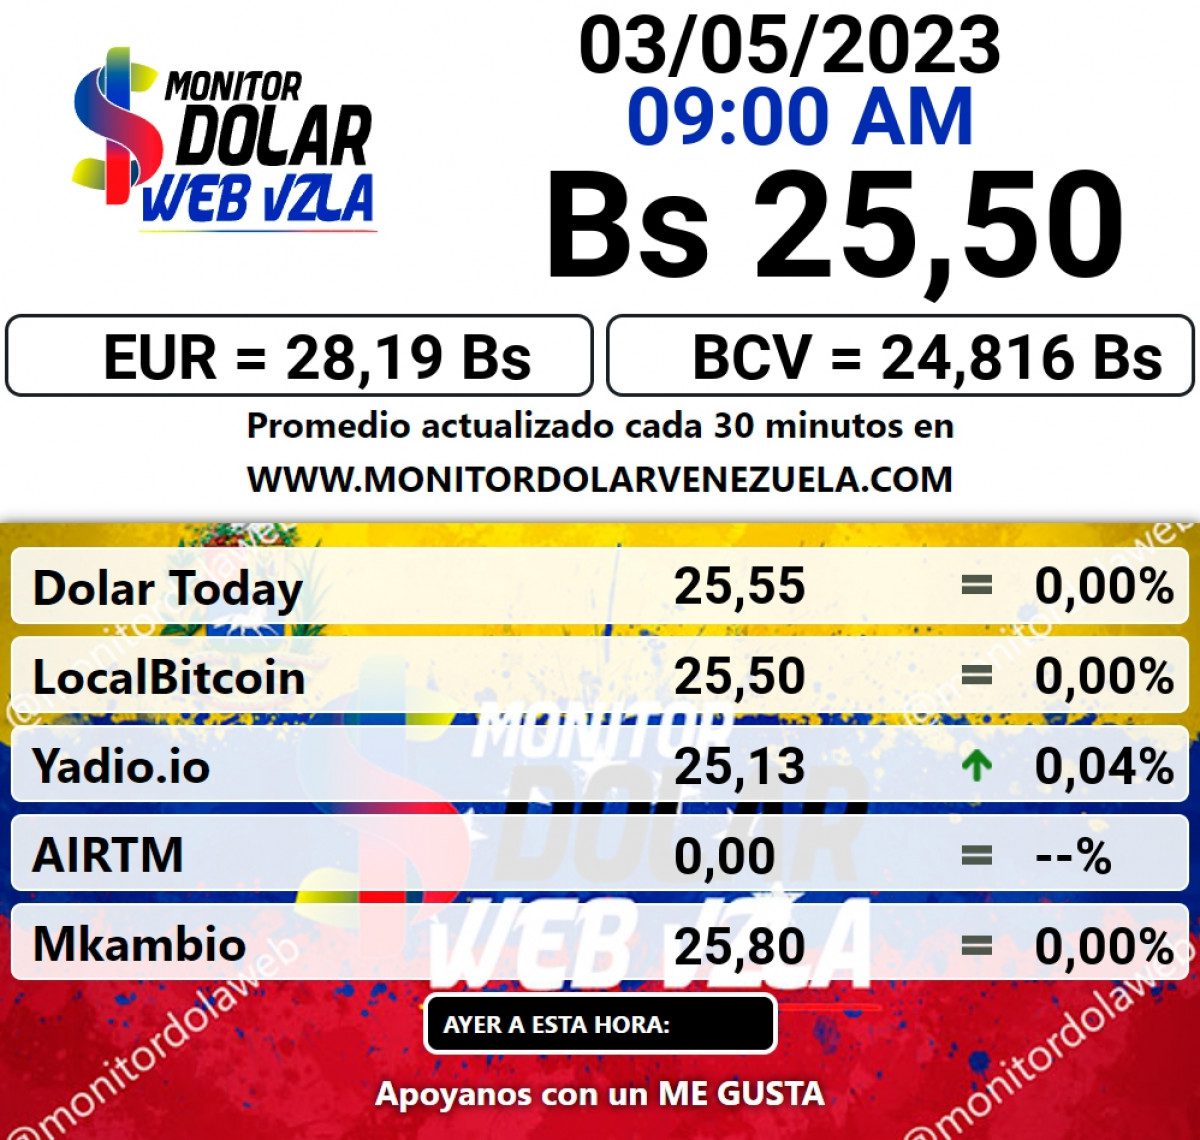 dolartoday en venezuela precio del dolar este miercoles 3 de mayo de 2023 laverdaddemonagas.com monitor2